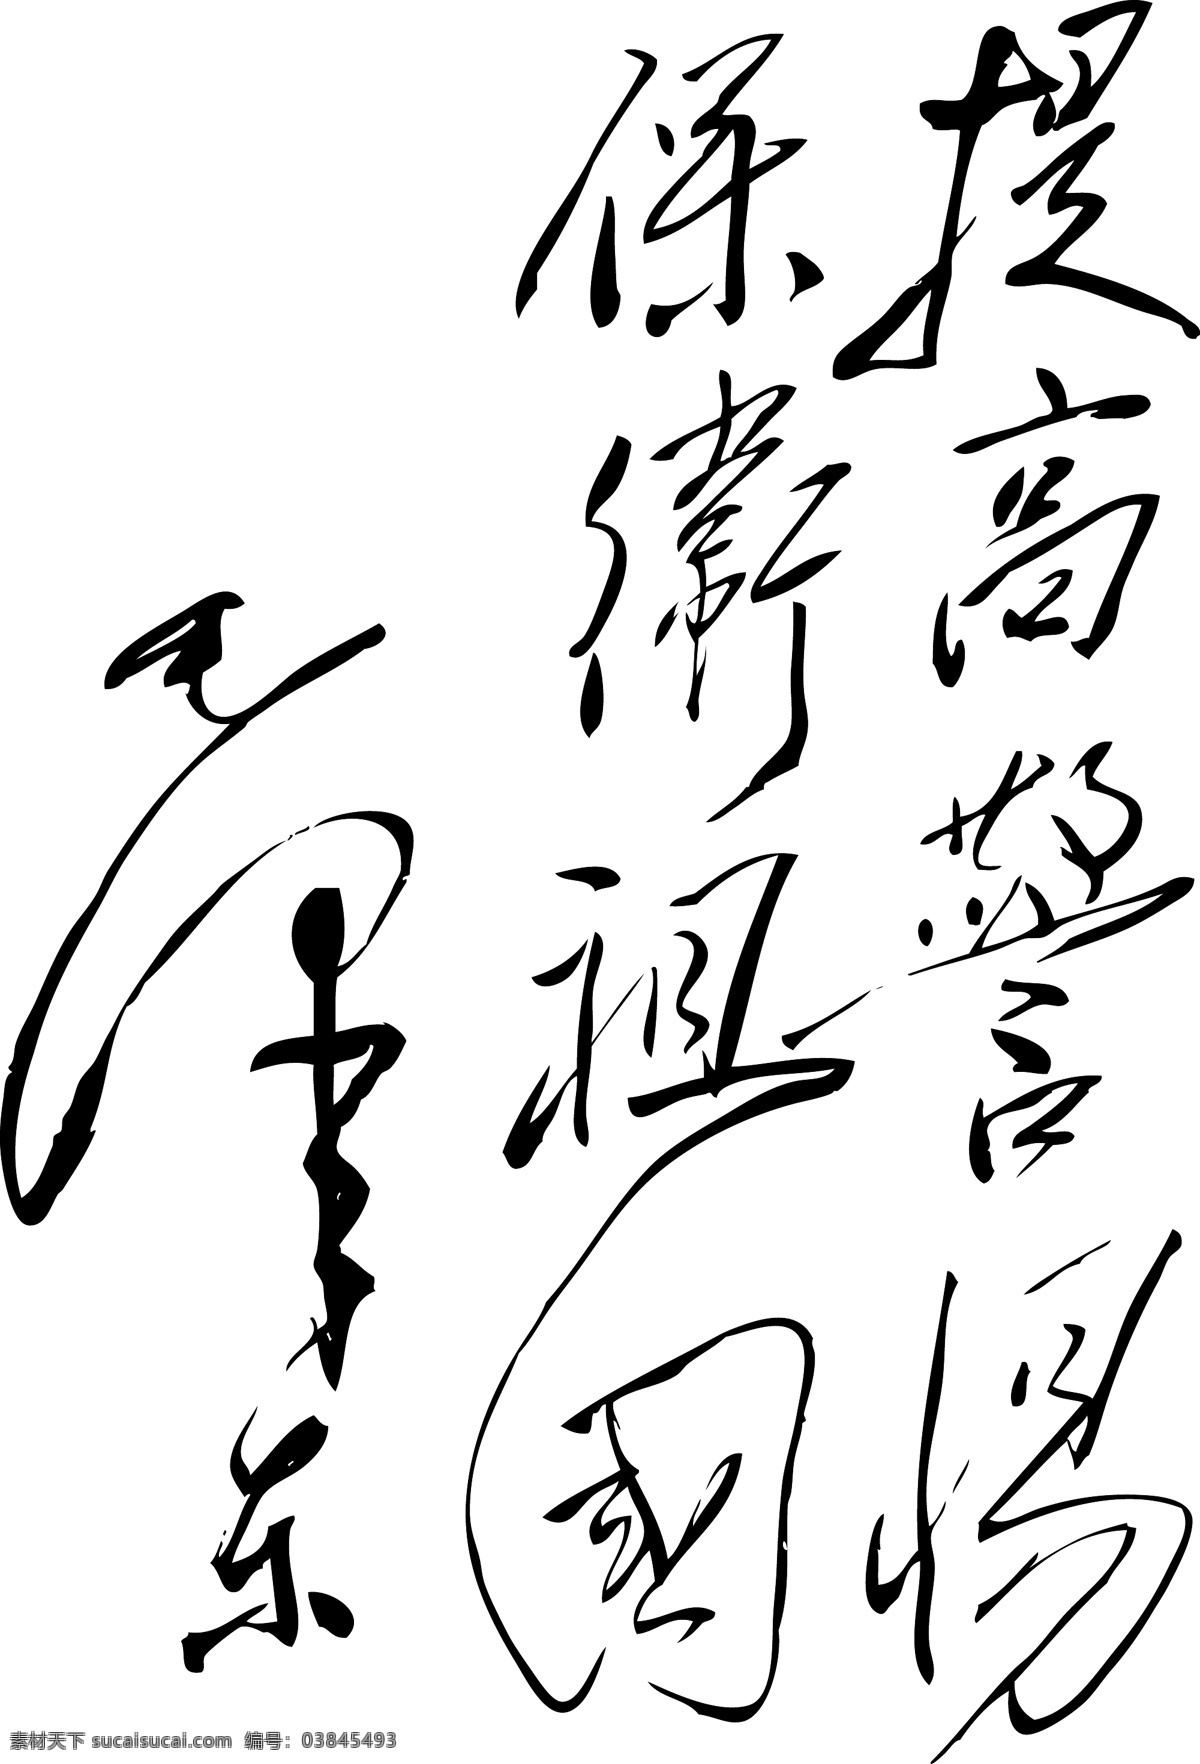 矢量 毛泽东 字体 高像素 可编辑 毛笔书法 艺术字 设计艺术 字 中国字 传 毛泽东现 矢量图